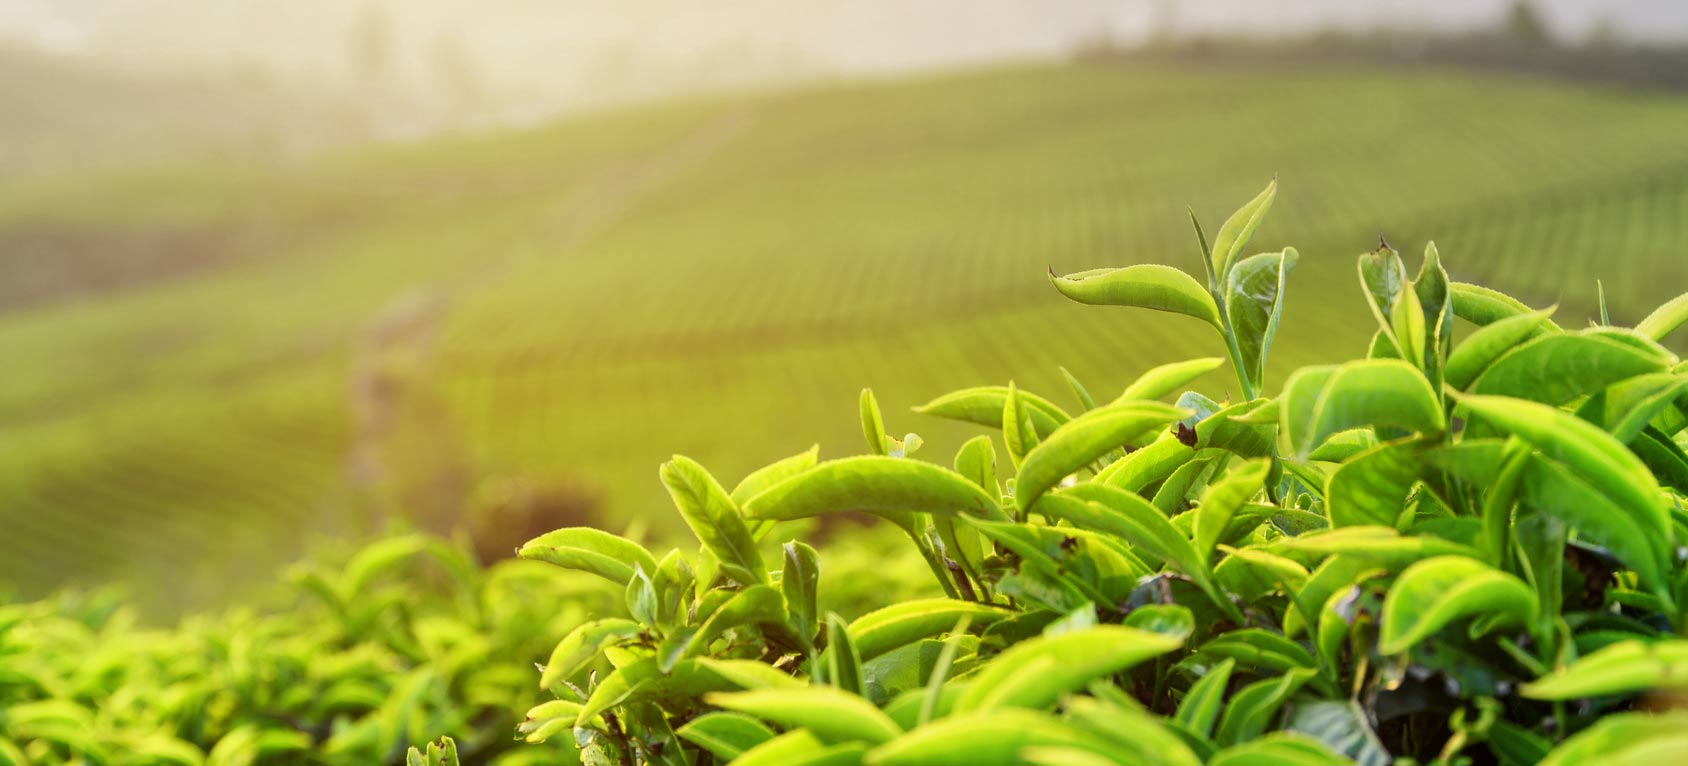 Substanz aus grünem Tee verbessert Antibiotikawirkung im Laborversuch